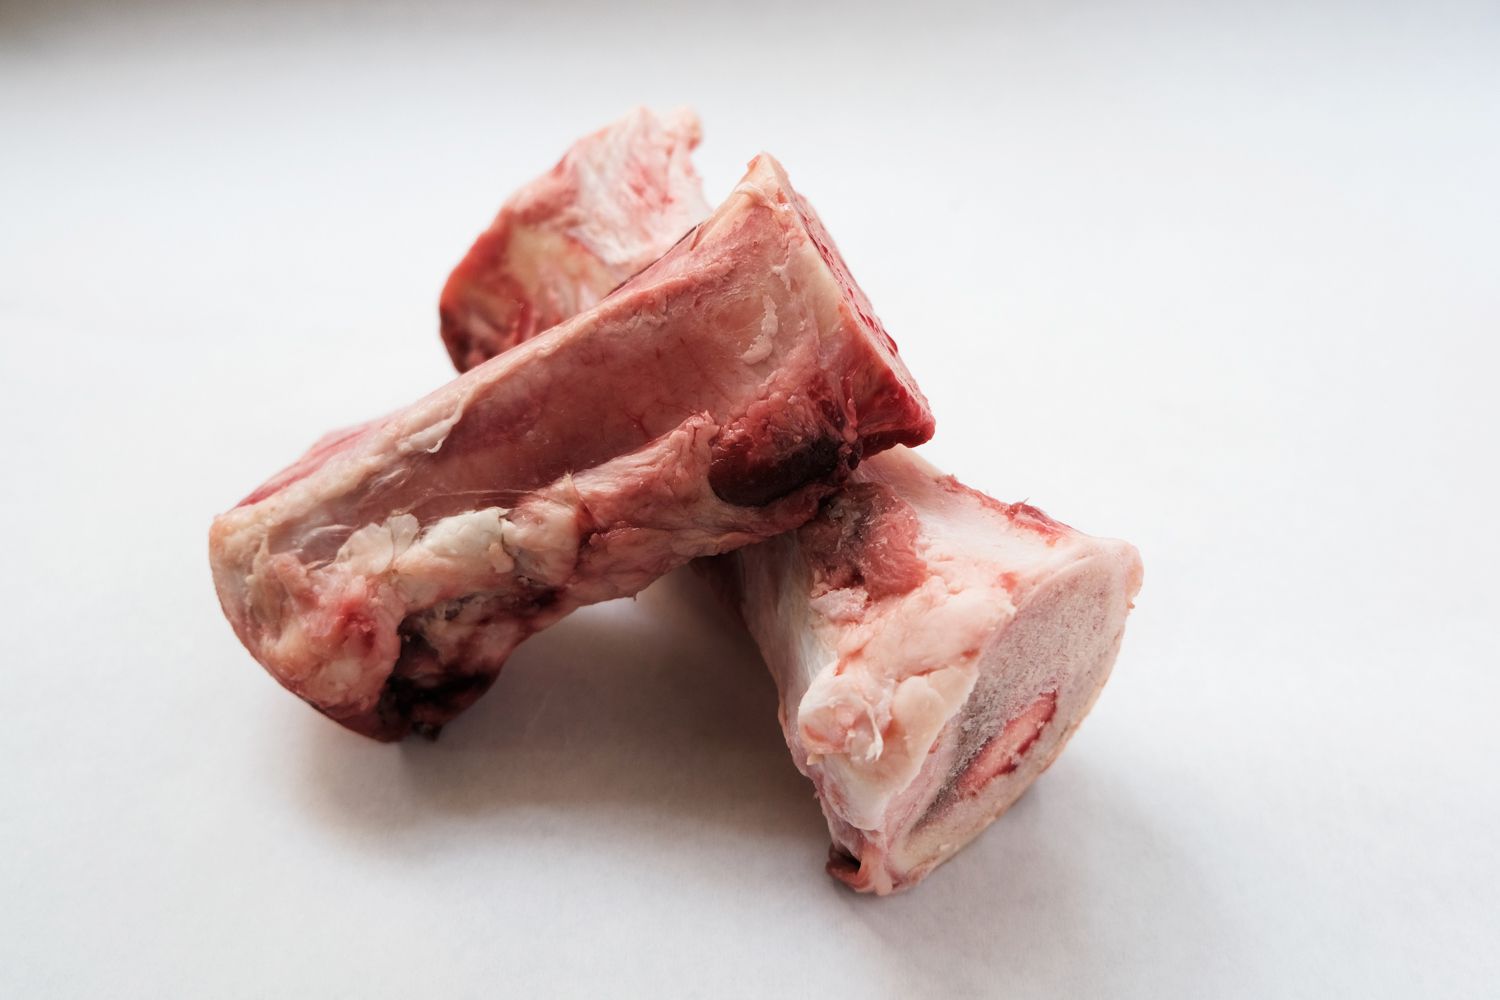 huesos de vaca crudos con carne adherida